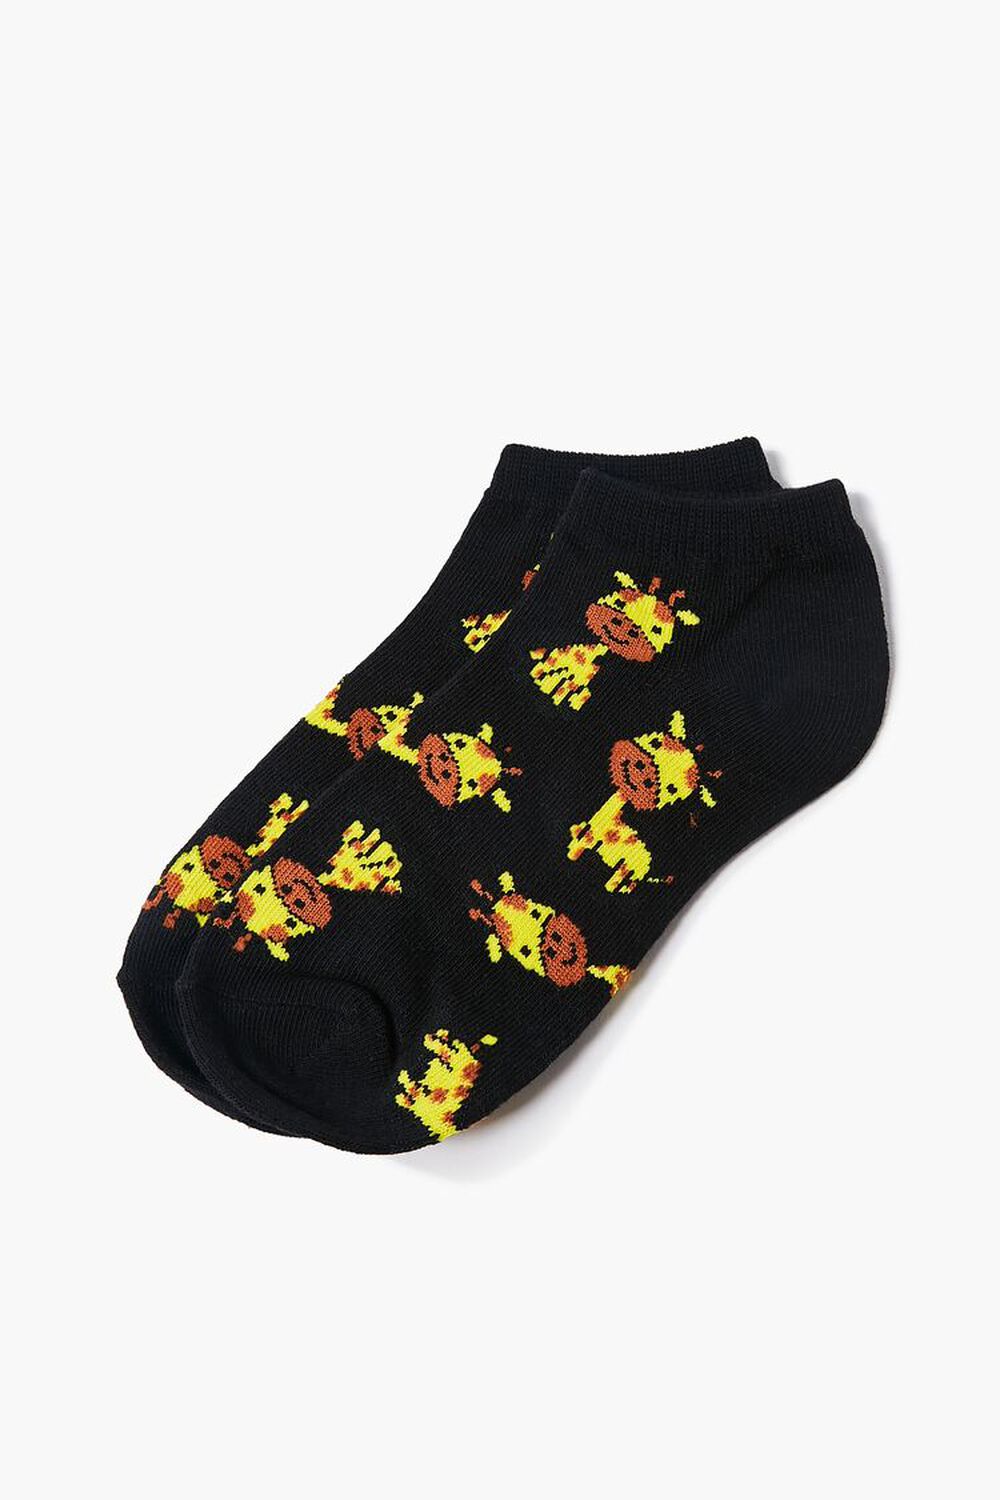 Giraffe Ankle Socks, image 2